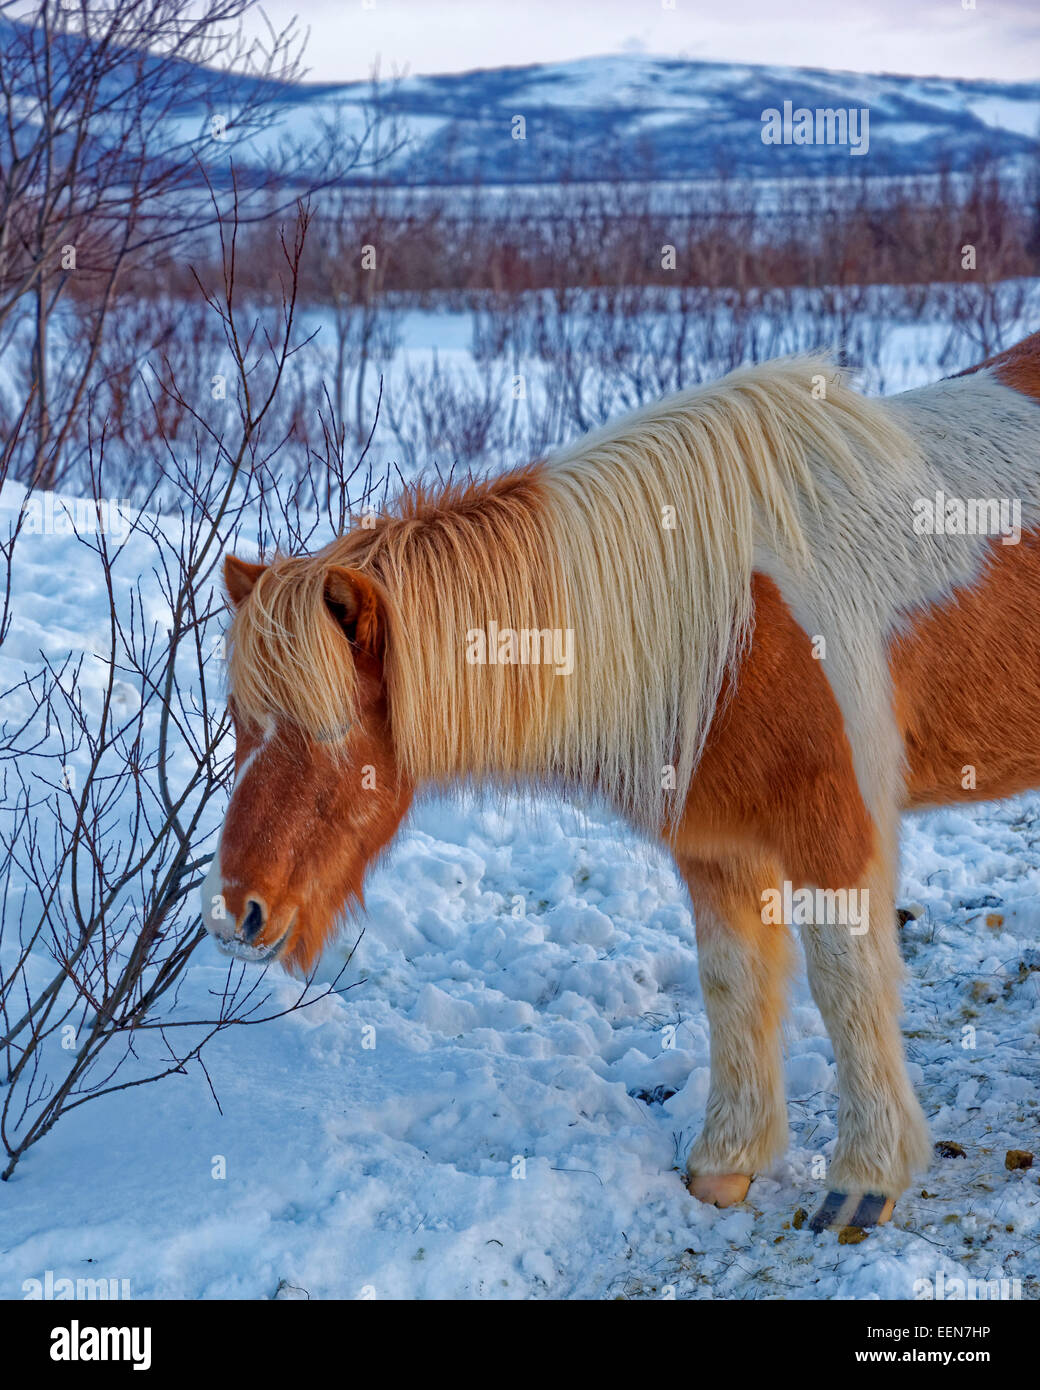 Cheval islandais est une race chevaline développée en Islande. Les chevaux sont petits, parfois de taille poney. Banque D'Images